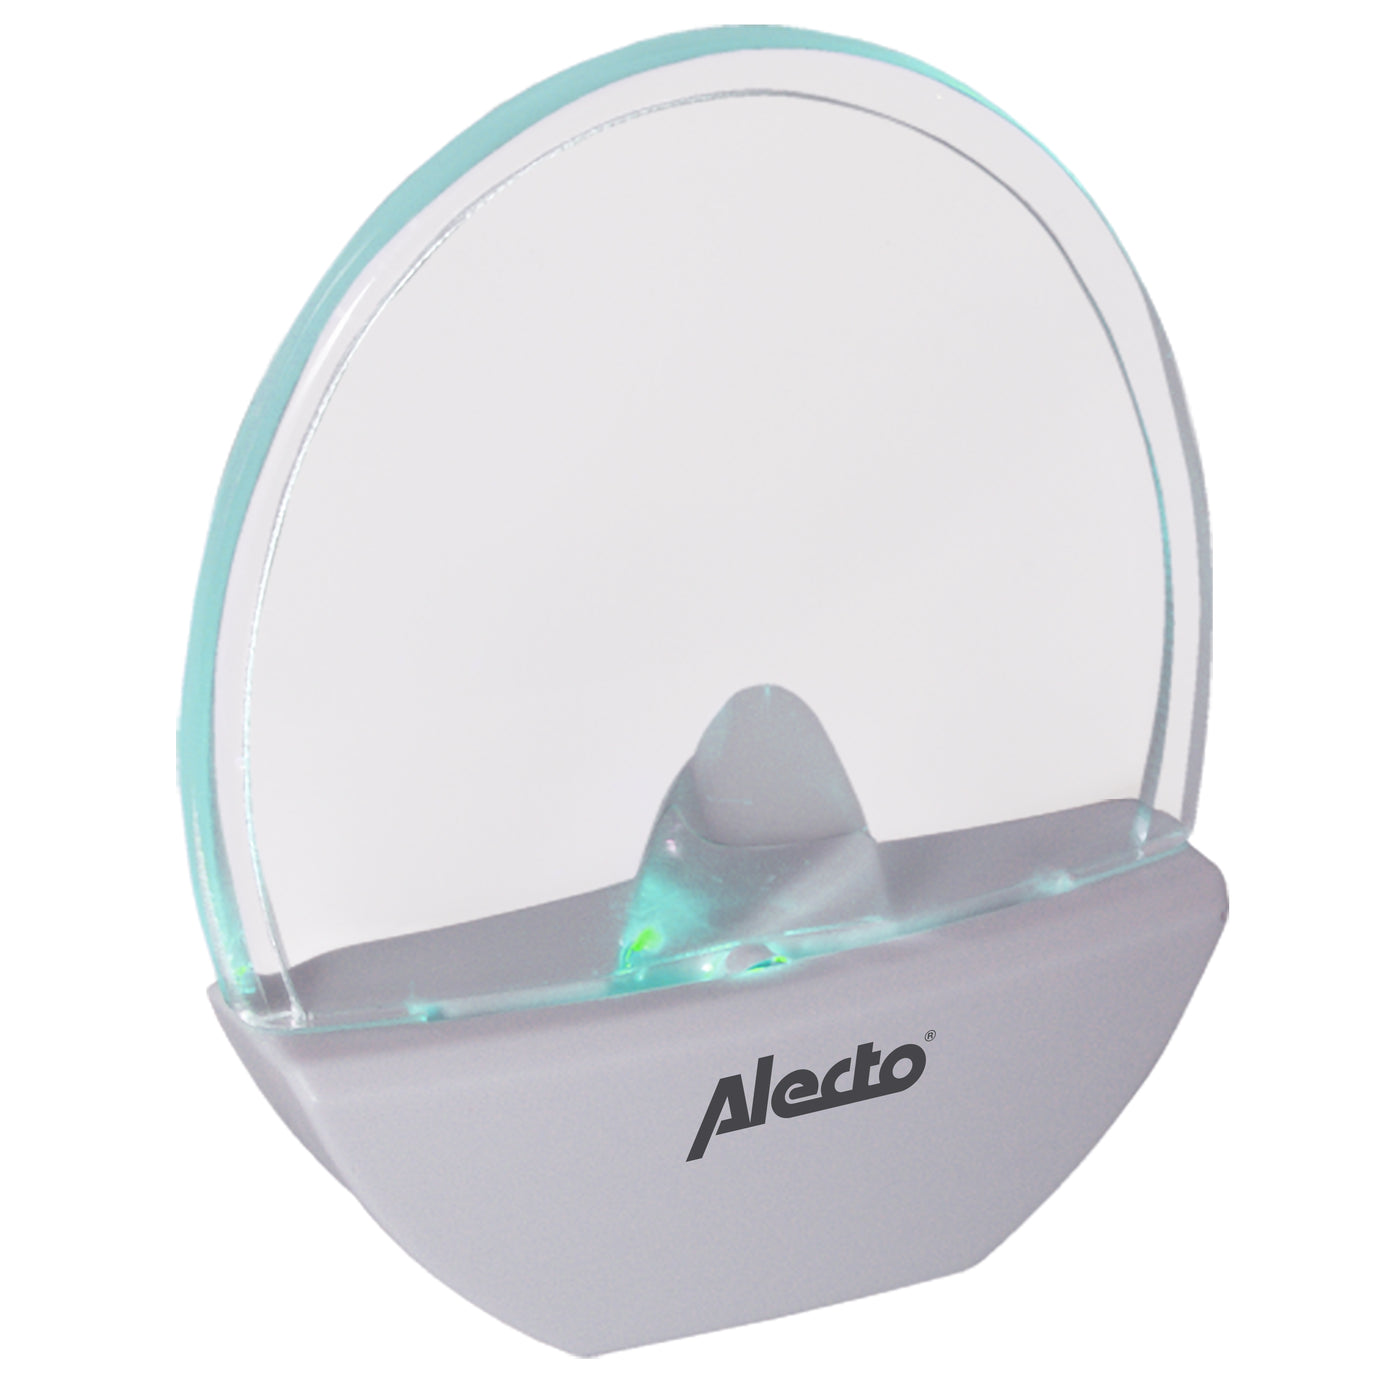 Alecto ANV-18 - LED nachtlampje, wit